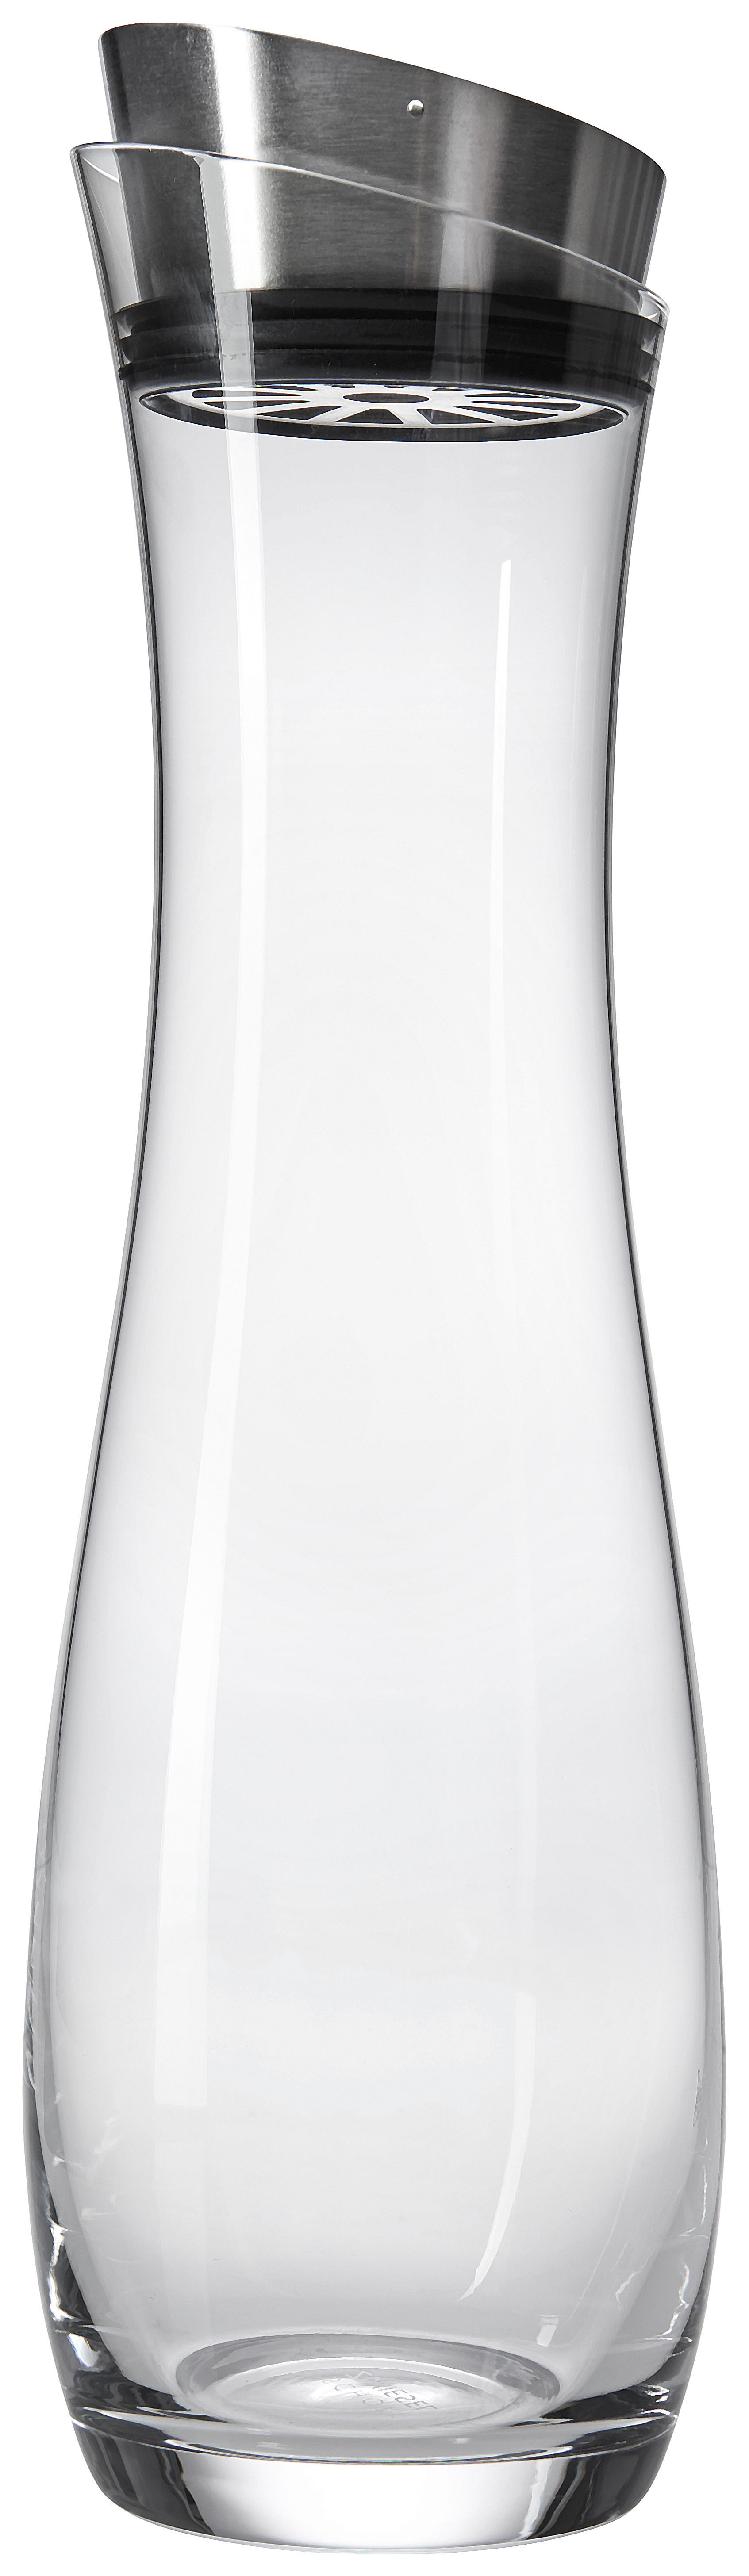 KARAFA  1 l  - čiré, Konvenční, sklo (10,0/33,72cm) - Schott Zwiesel